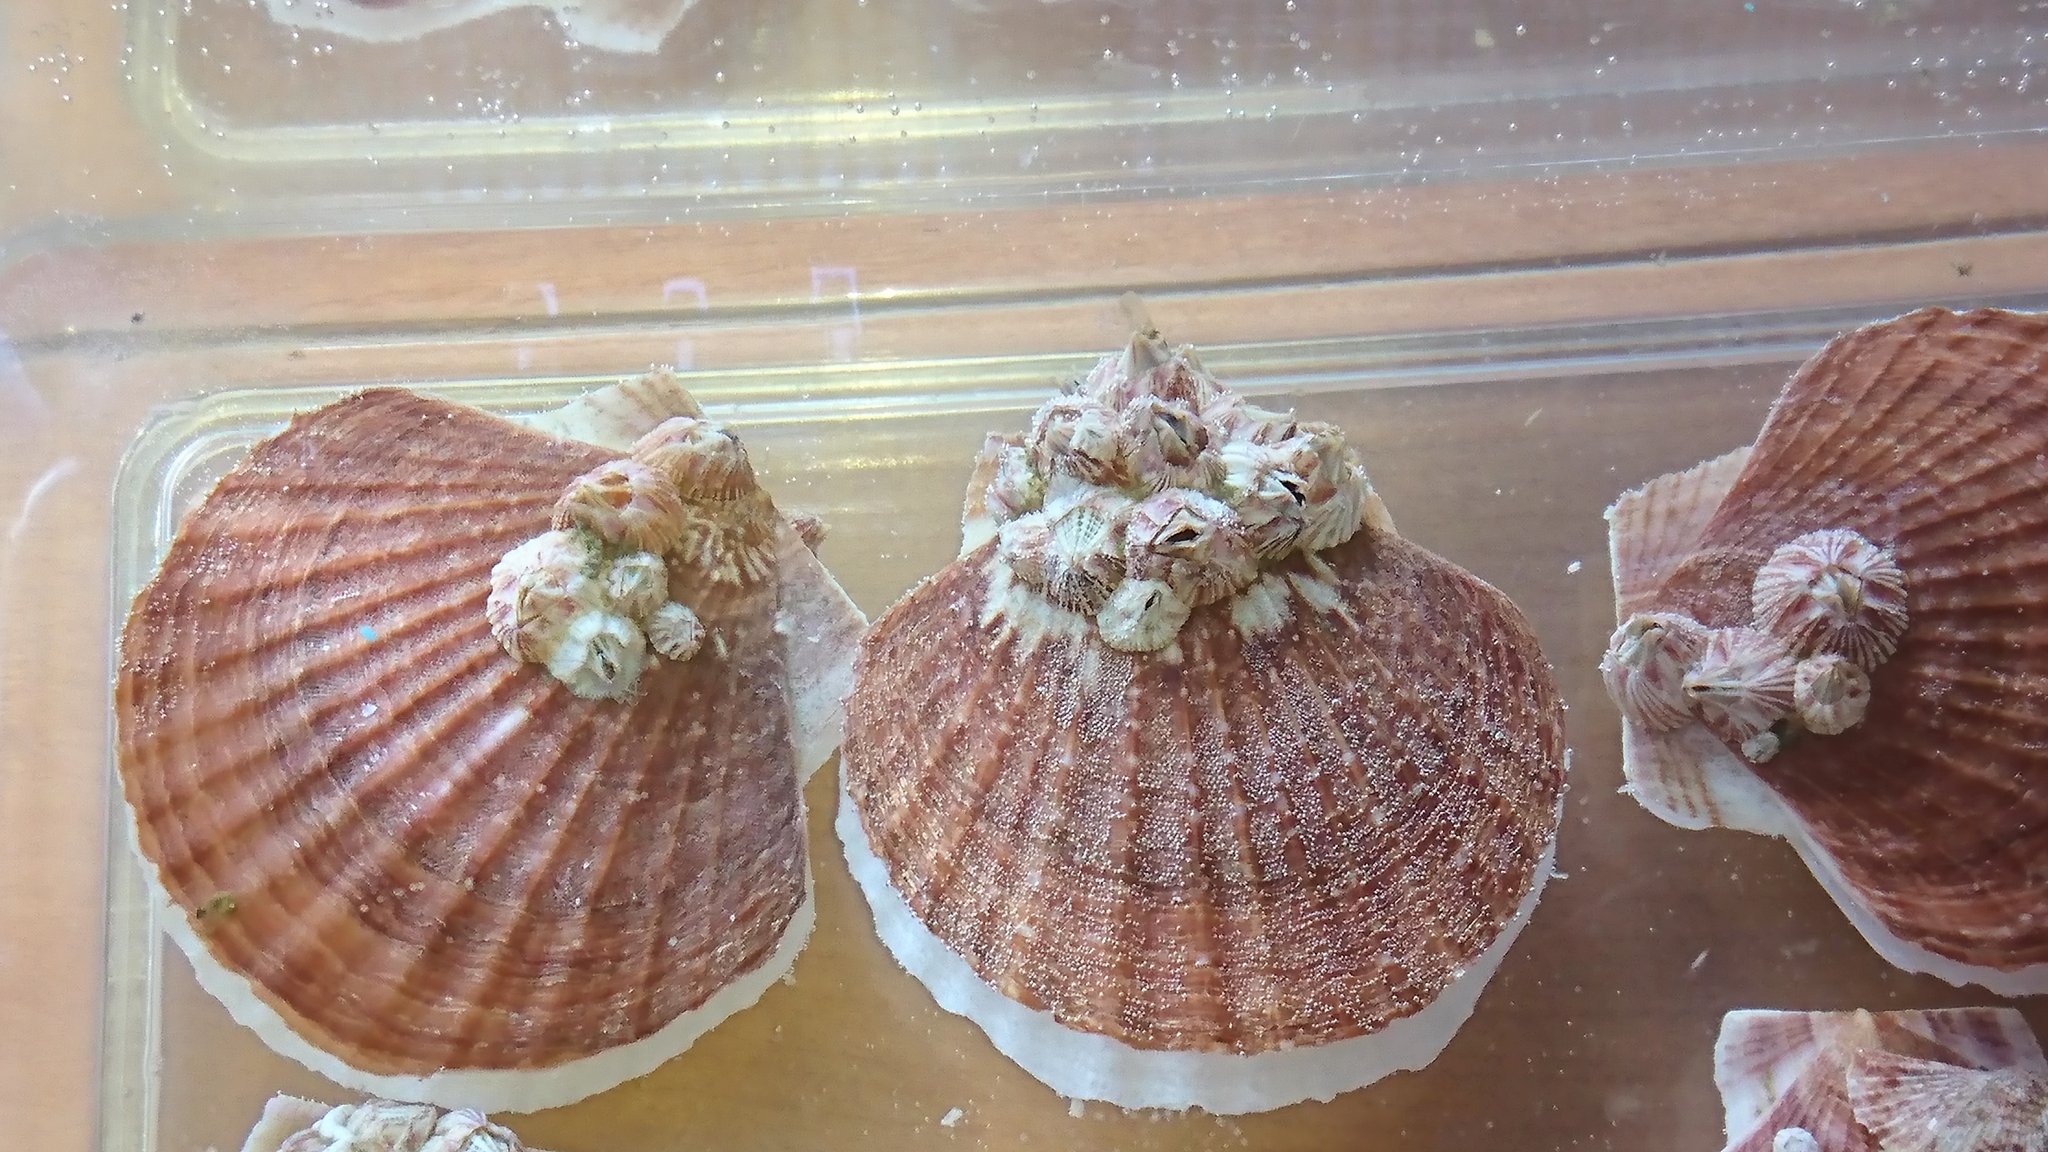 三田パパ ホタテ貝 フジツボ 近所のスーパーで 消費期限ギリギリのため安く販売されていたホタテ稚貝 貝 の直径は５ ほどだが 14粒 極小稚貝を含む 全部で110円 貝に付着しているフジツボが生存していたら 面白いな と思っていたら フジツボの